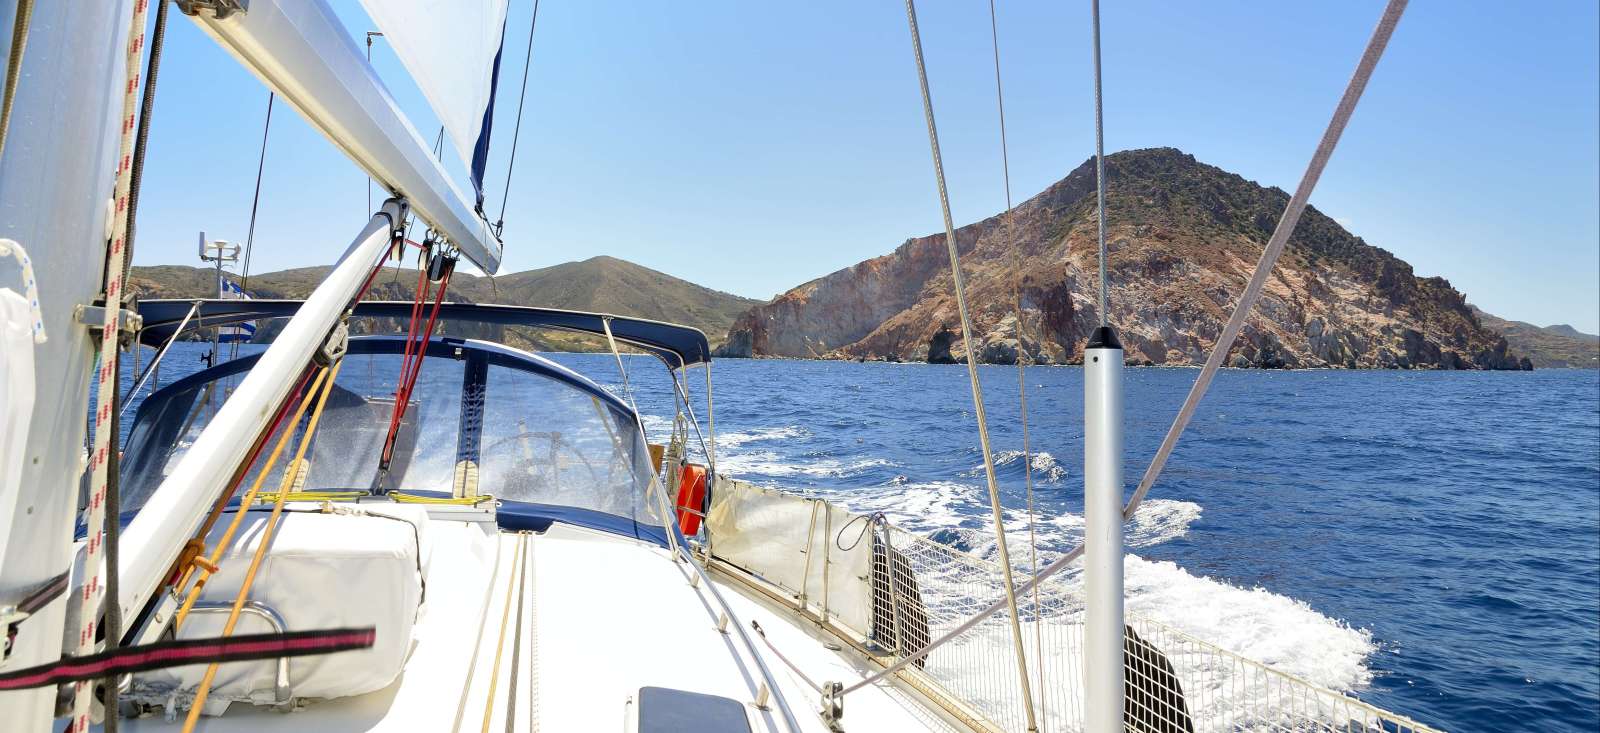 Voyage sur l'eau : Croisière active Santorin-Santorin !